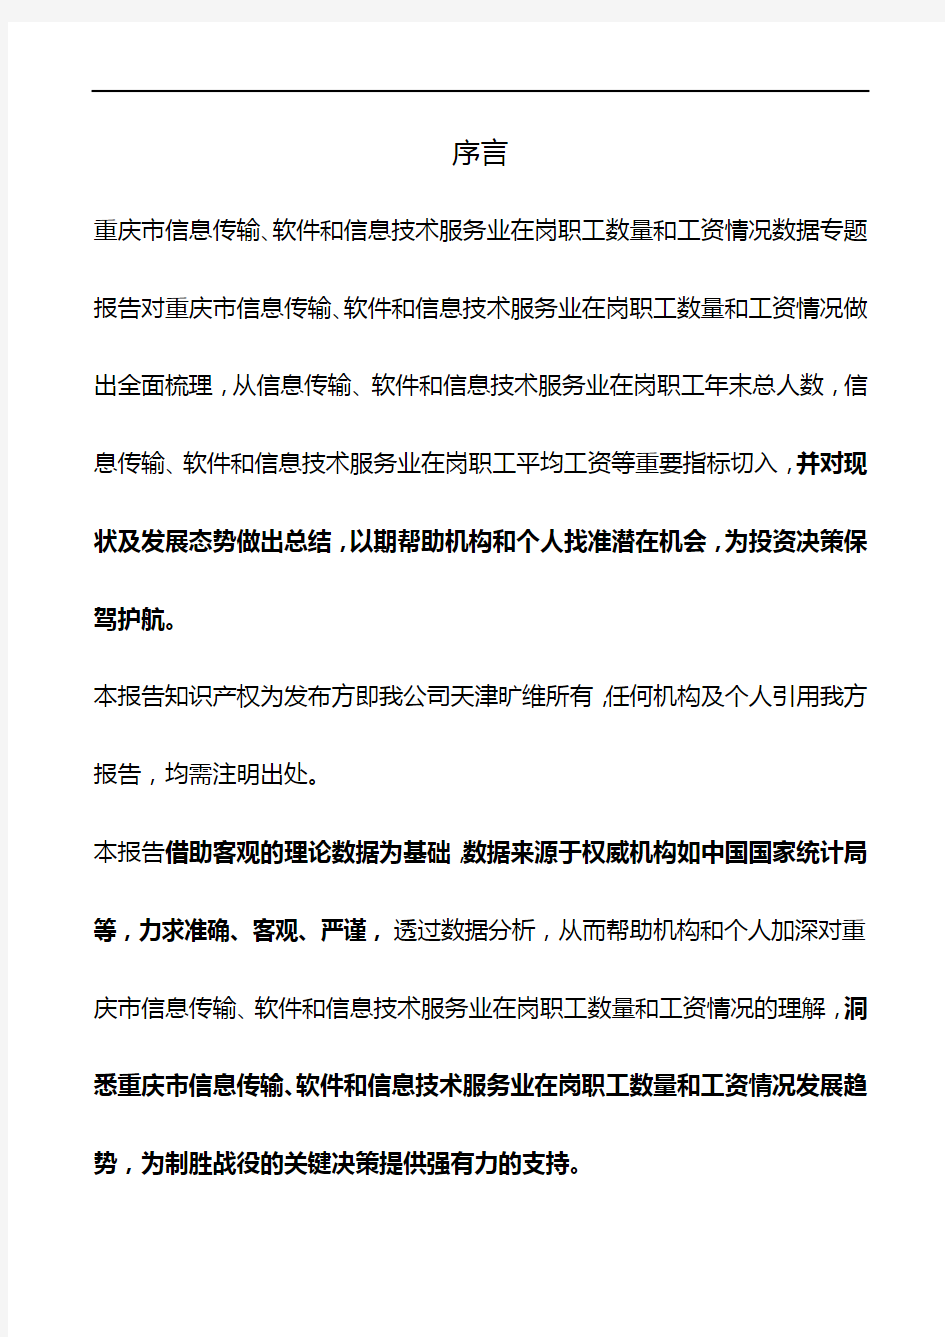 重庆市信息传输、软件和信息技术服务业在岗职工数量和工资情况数据专题报告2018版